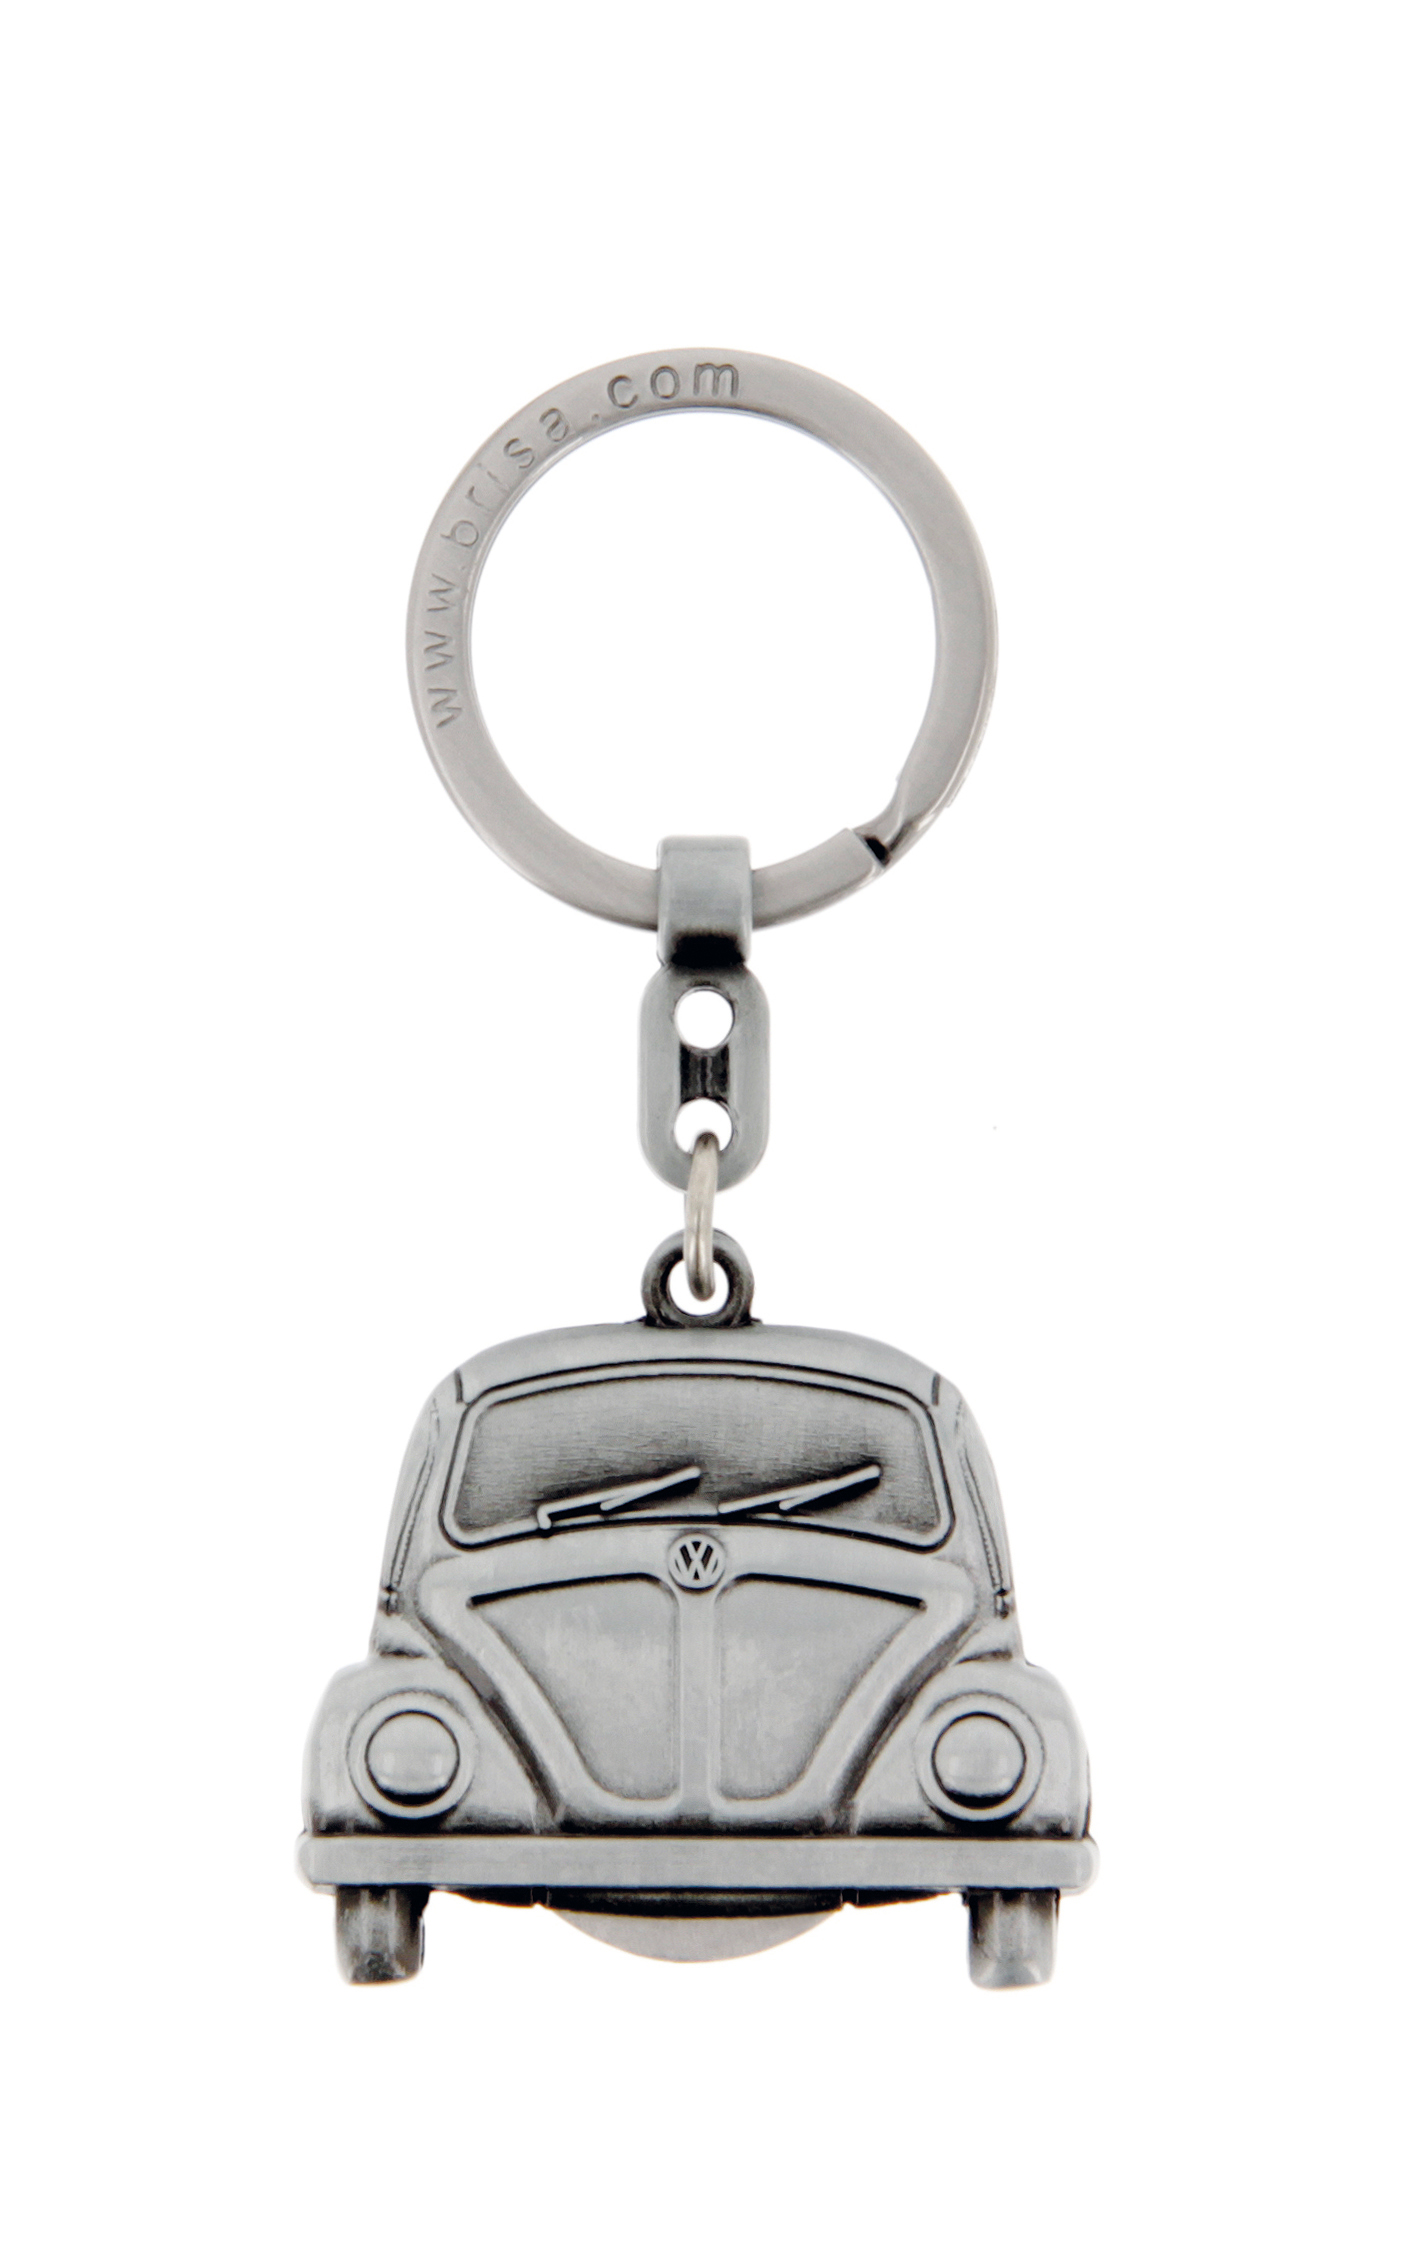 Portachiavi VW Beetle con chip per carrello della spesa in confezione regalo - look argento antico